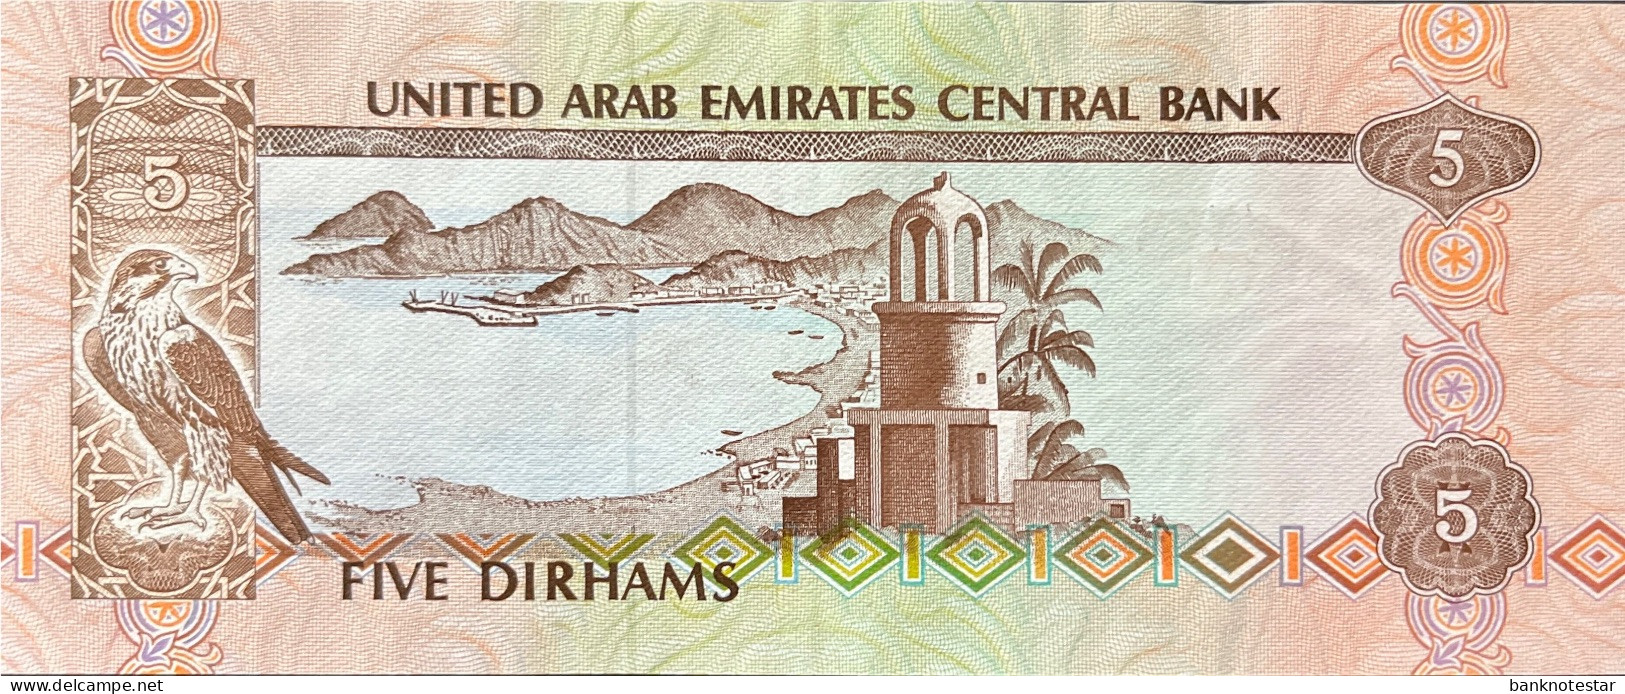 United Arab Emirates 5 Dirham, P-7 (1982) - Extremely Fine Plus - Ver. Arab. Emirate